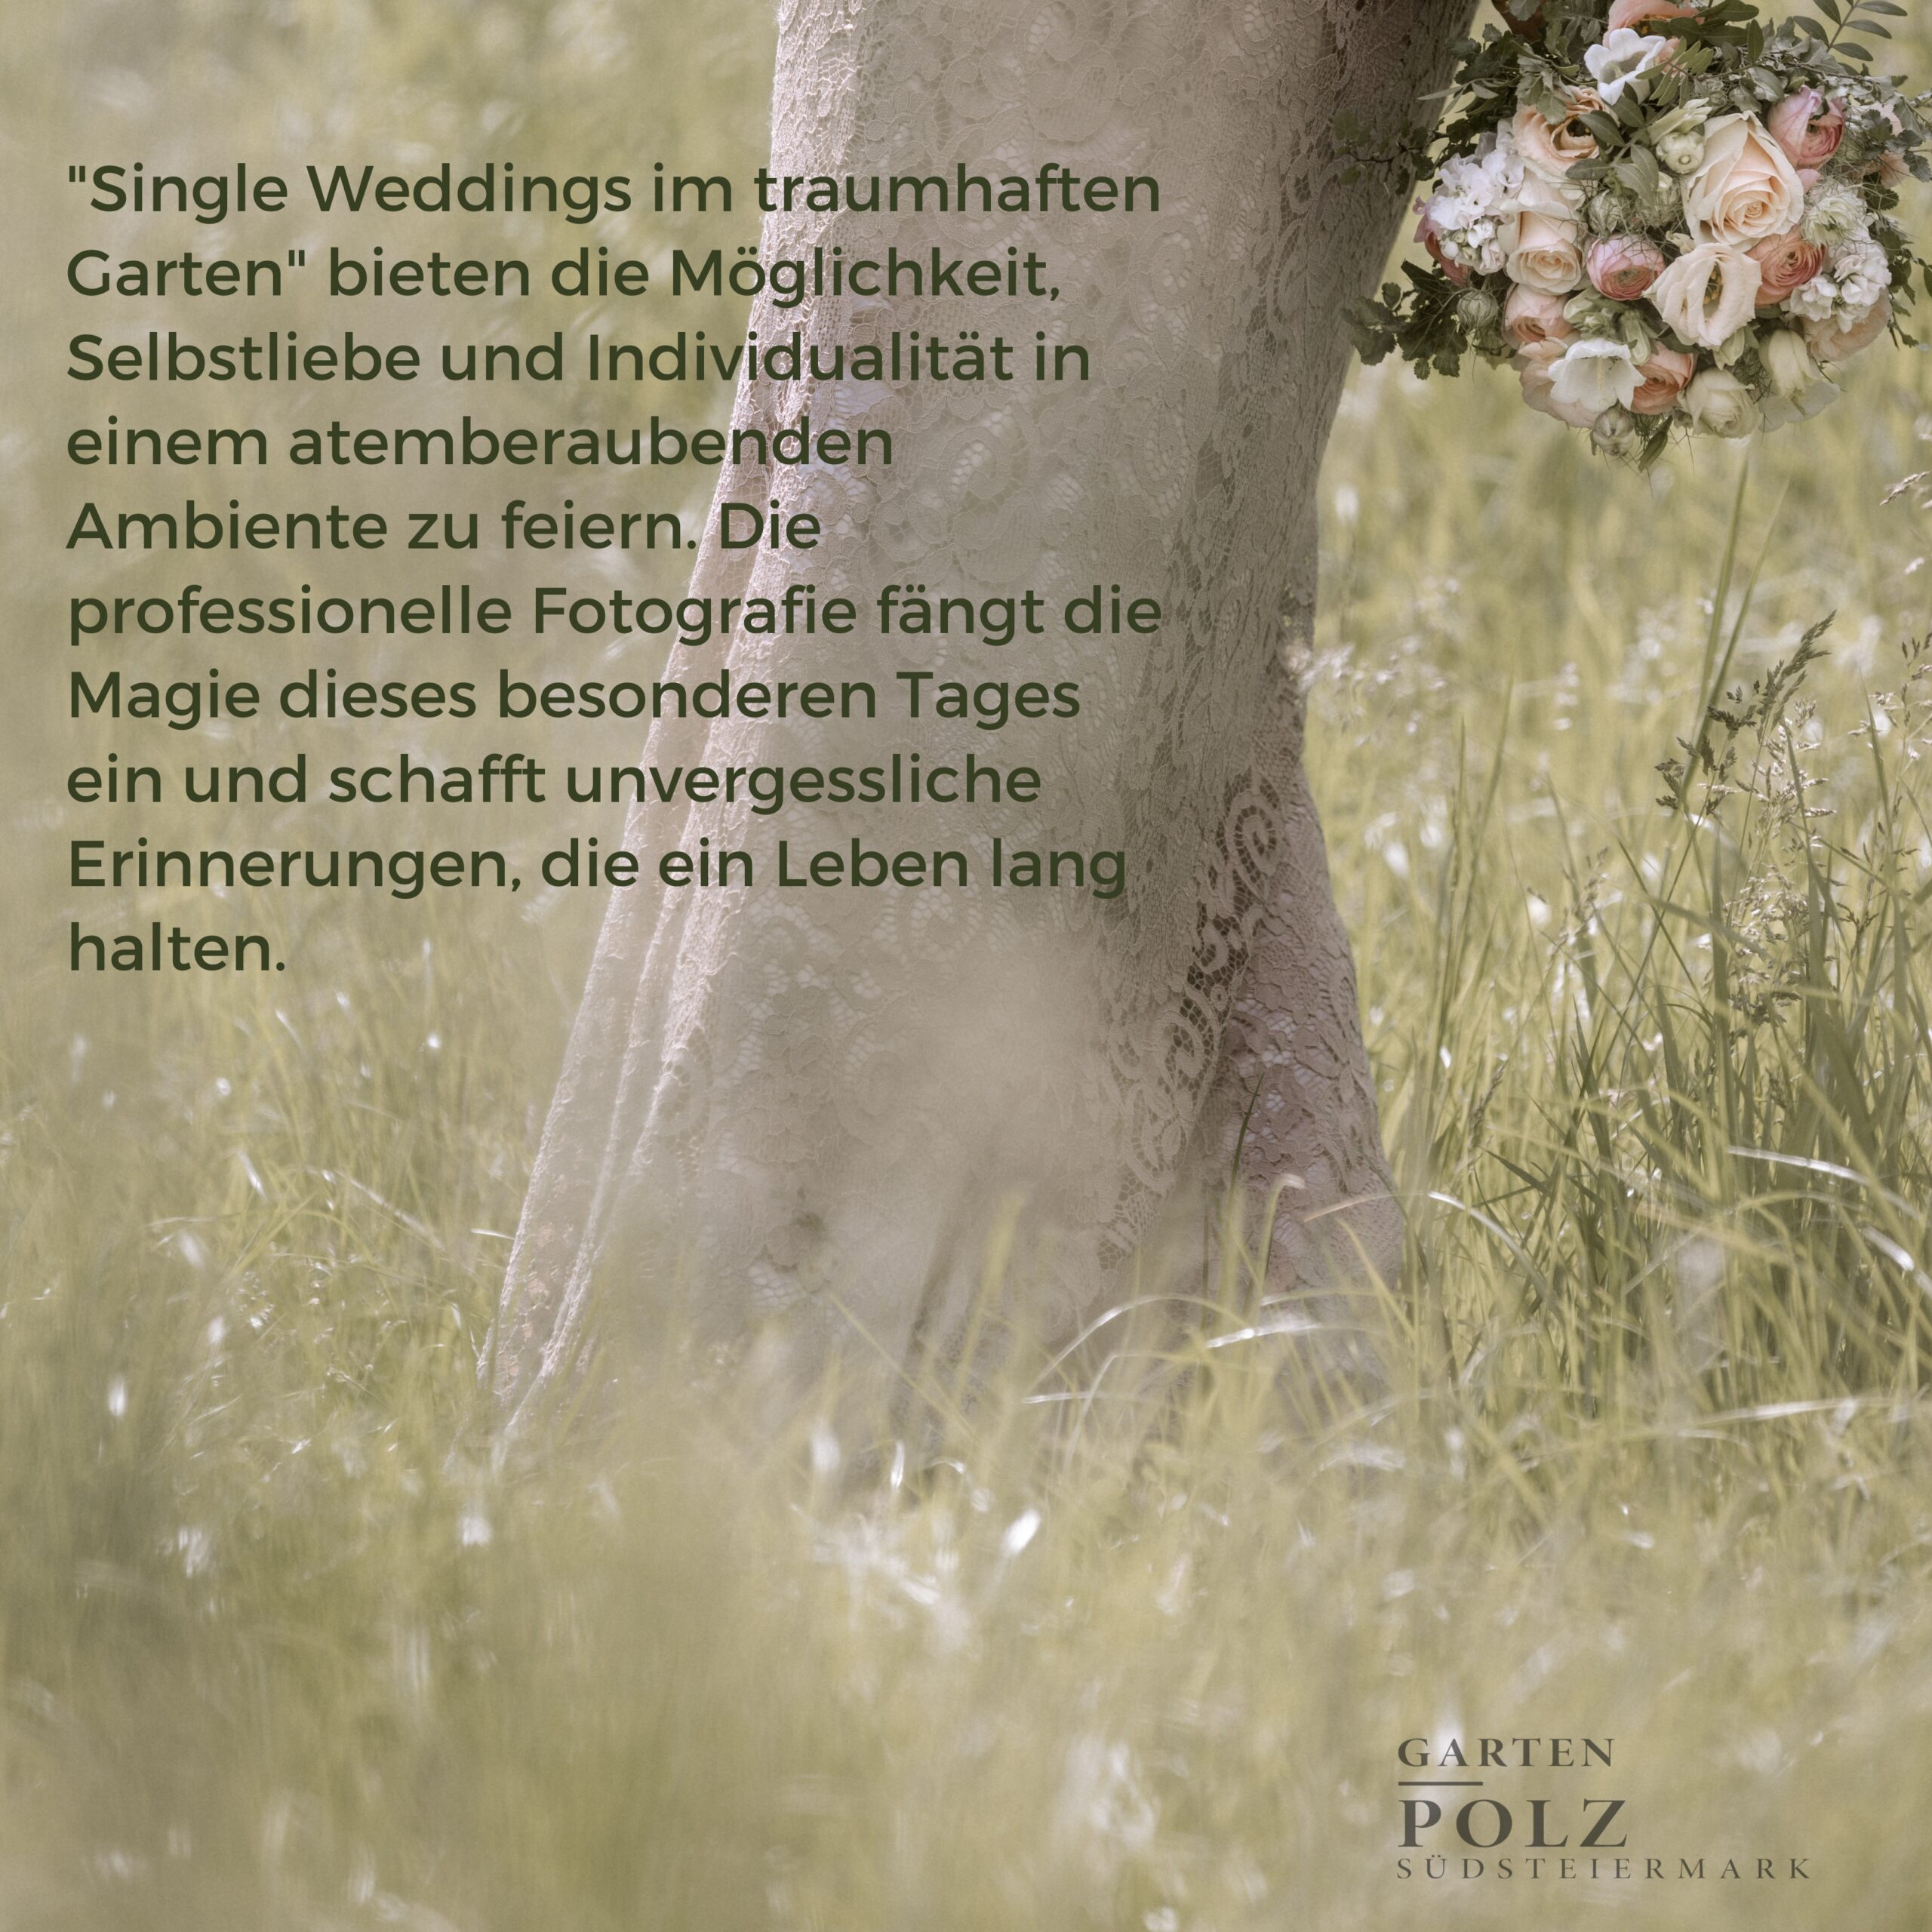 "Single Weddings im traumhaften Garten" bieten die Möglichkeit, Selbstliebe und Individualität in einem atemberaubenden Ambiente zu feiern. Die professionelle Fotografie fängt die Magie dieses besonderen Tages ein und schafft unvergessliche Erinnerungen, die ein Leben lang halten.